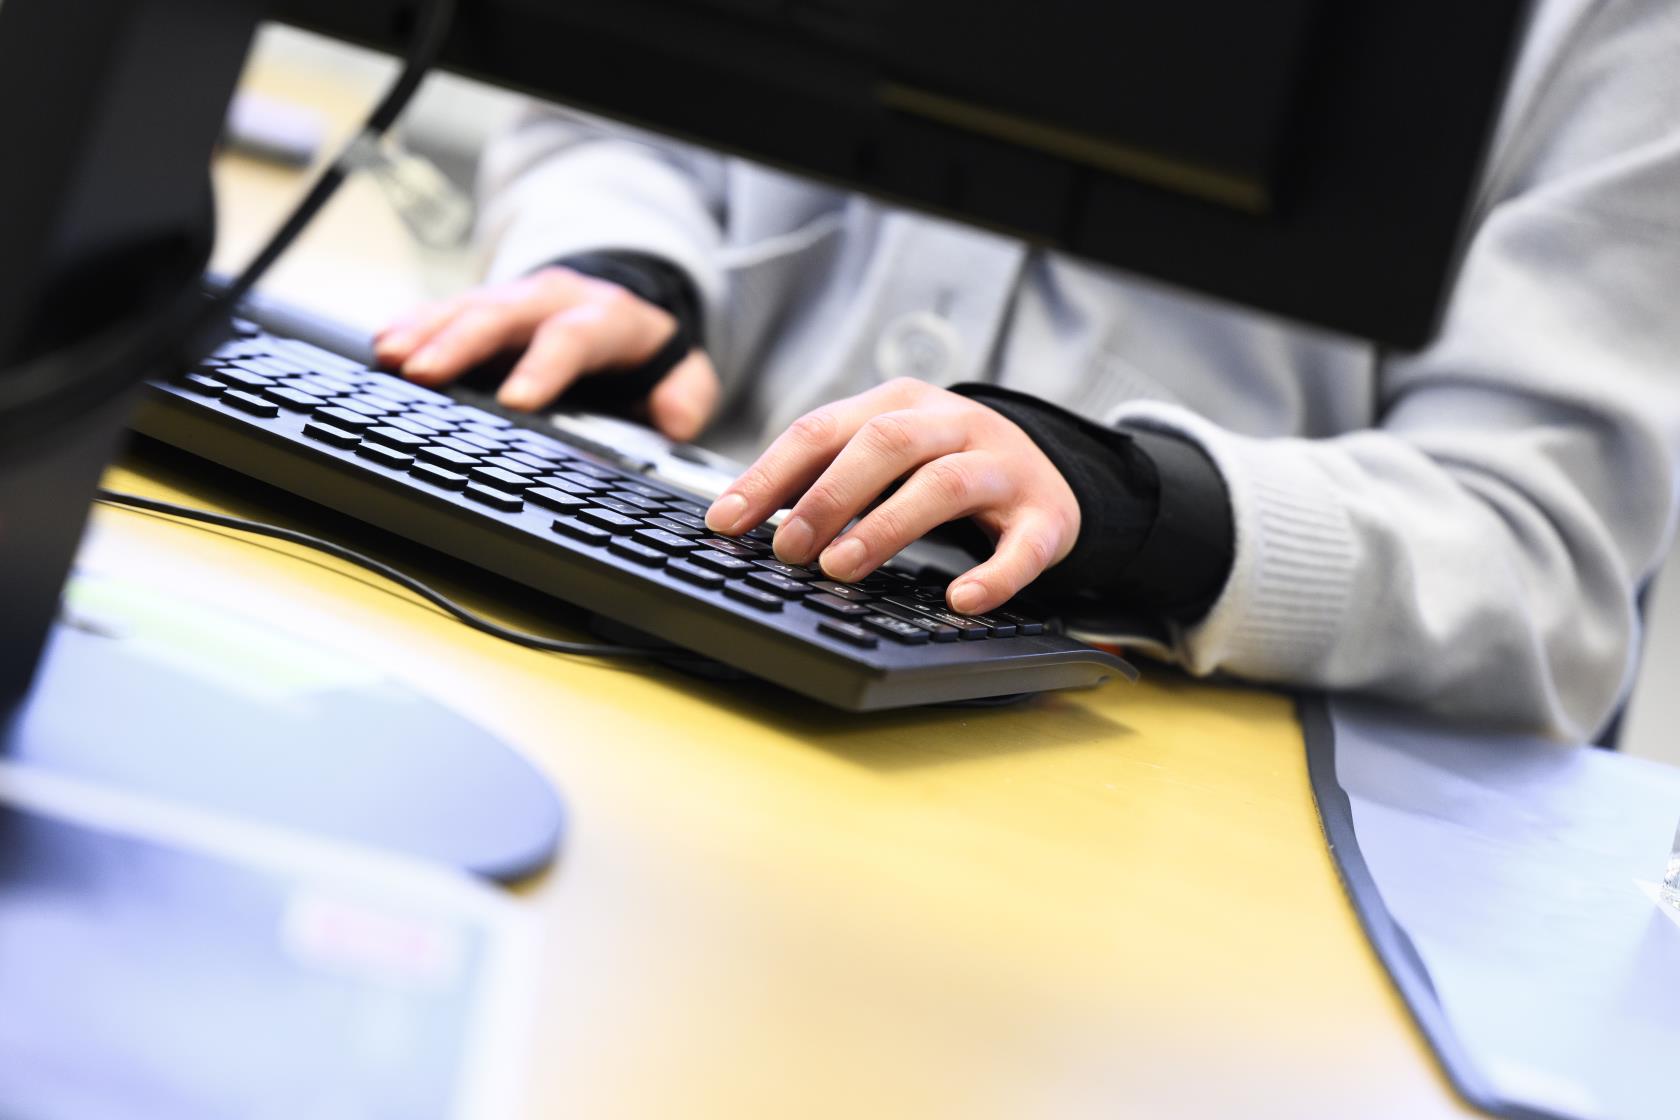 Någon sitter vid ett skrivbord bakom en datorskärm och knappar på ett tangentbord.